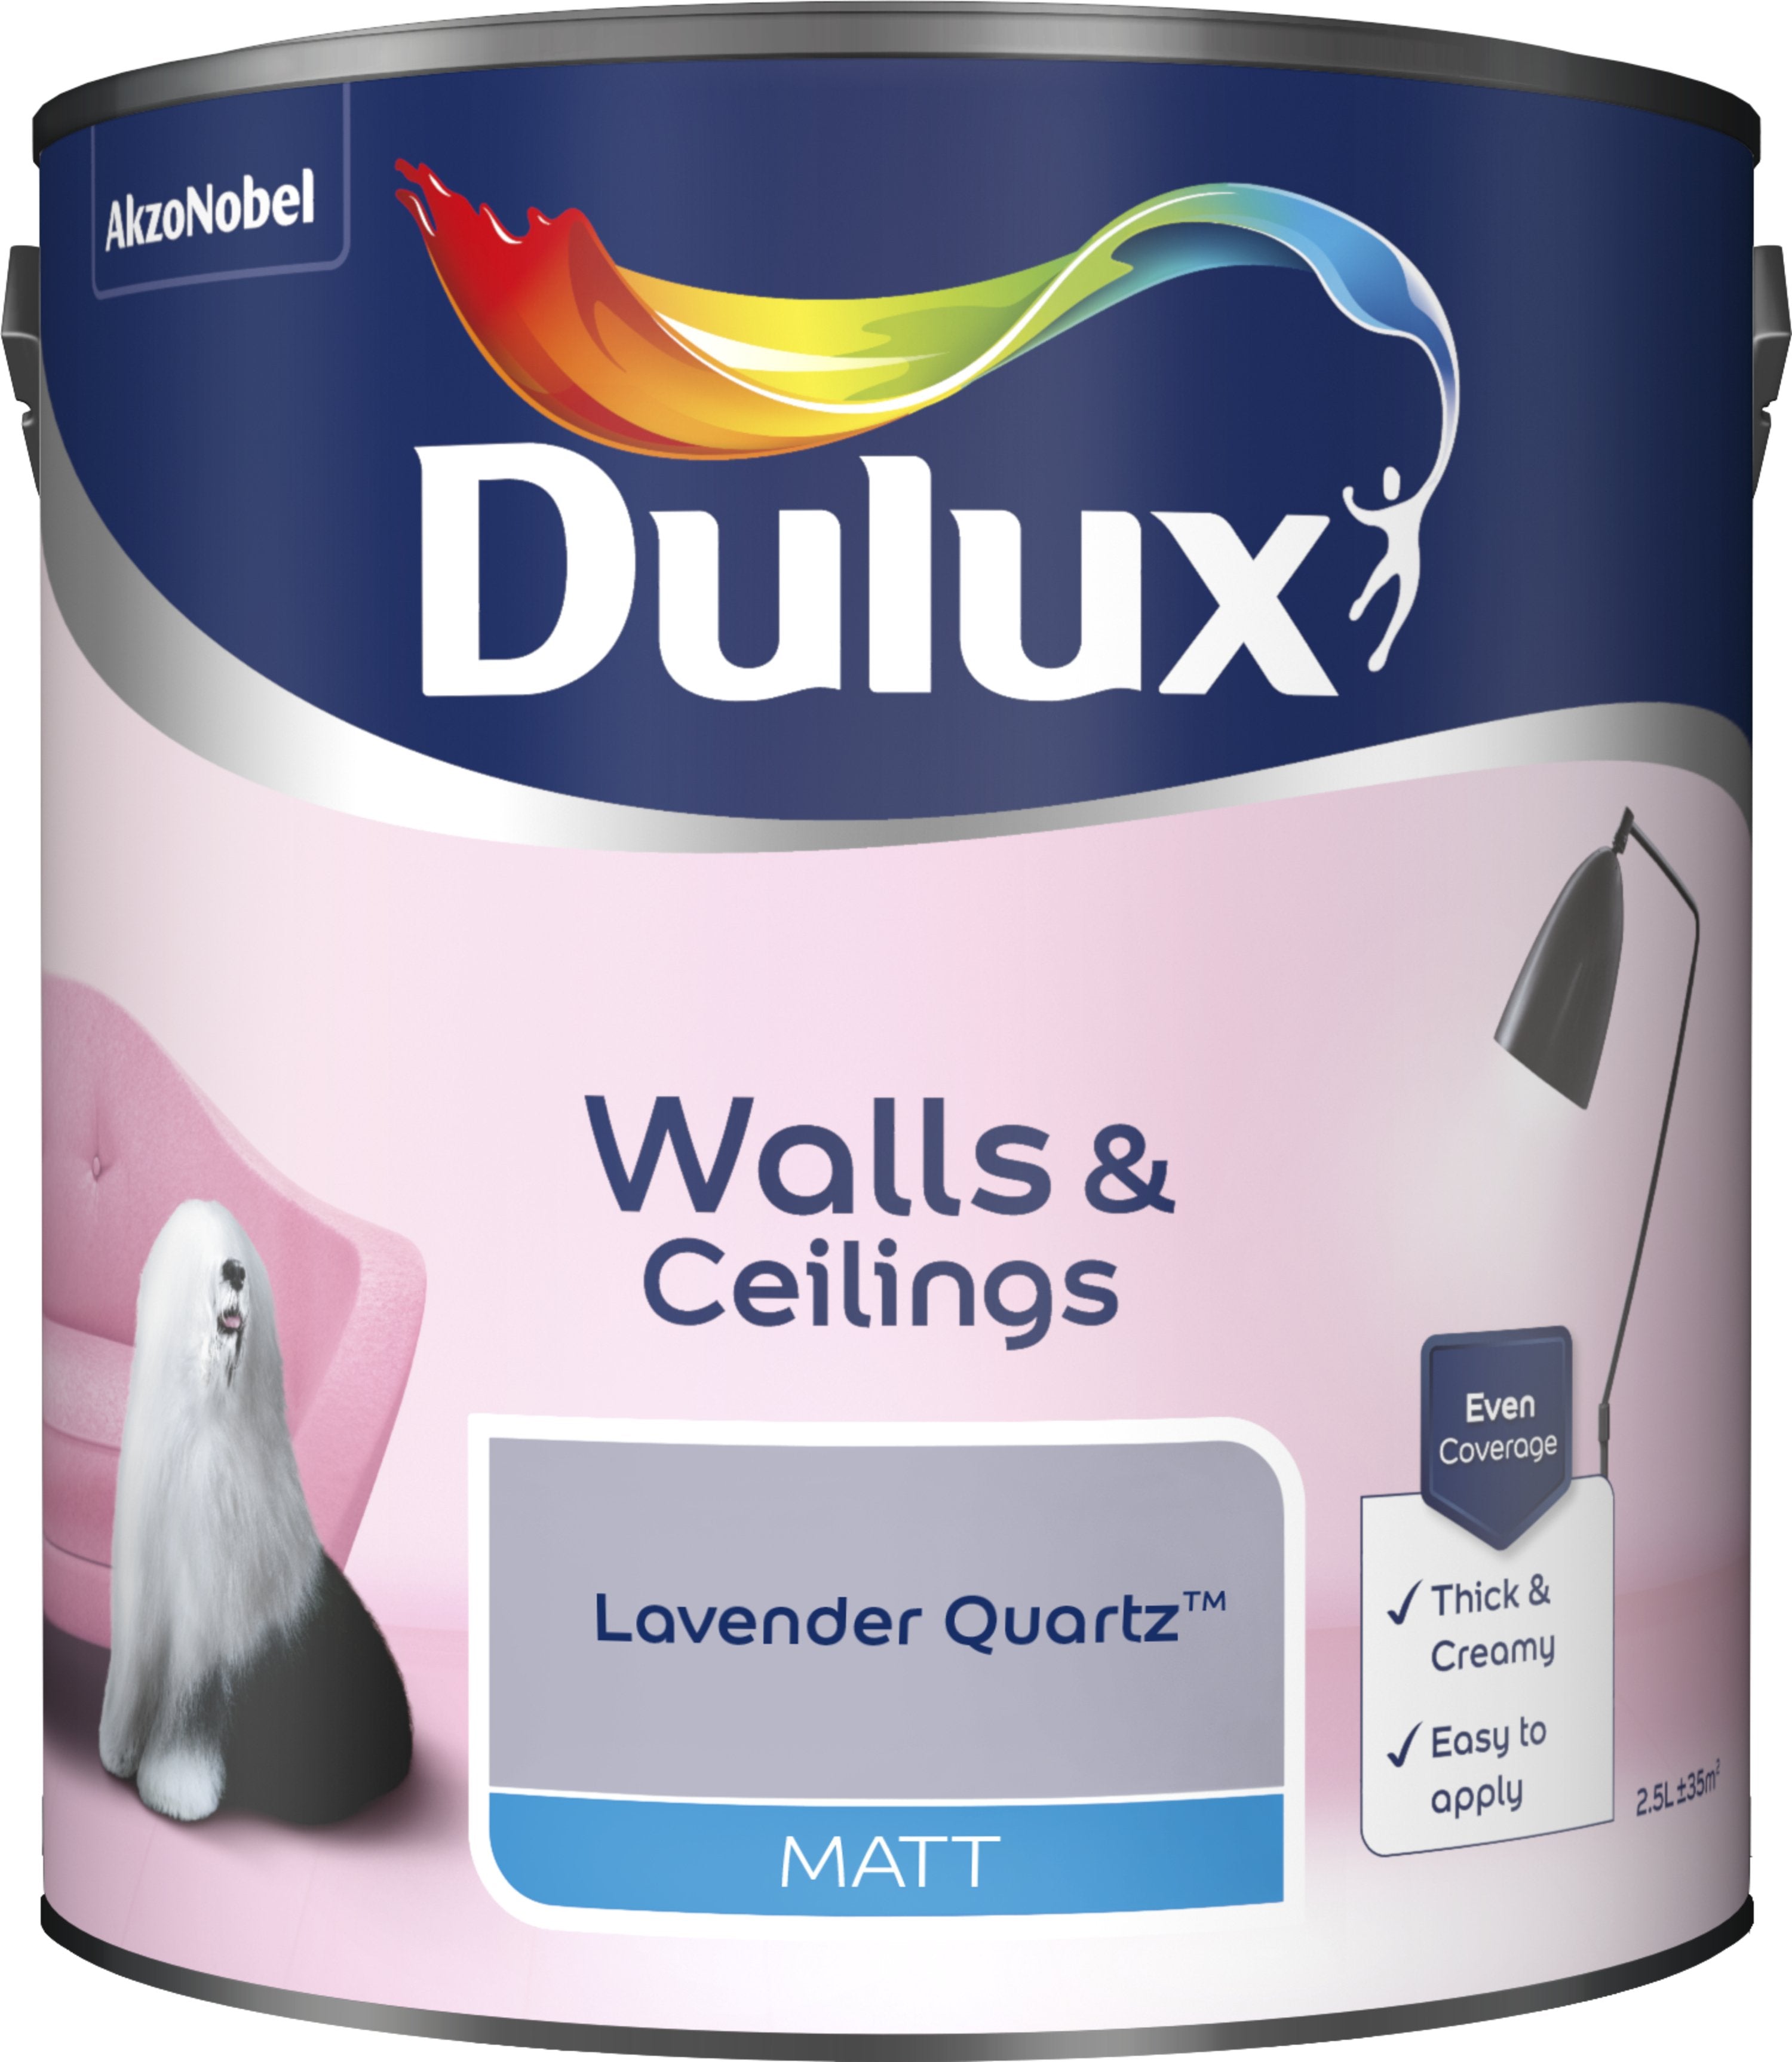 Dulux Matt Emulsion Paint For Walls And Ceilings - Lavender Quartz 2.5L Garden & Diy  Home